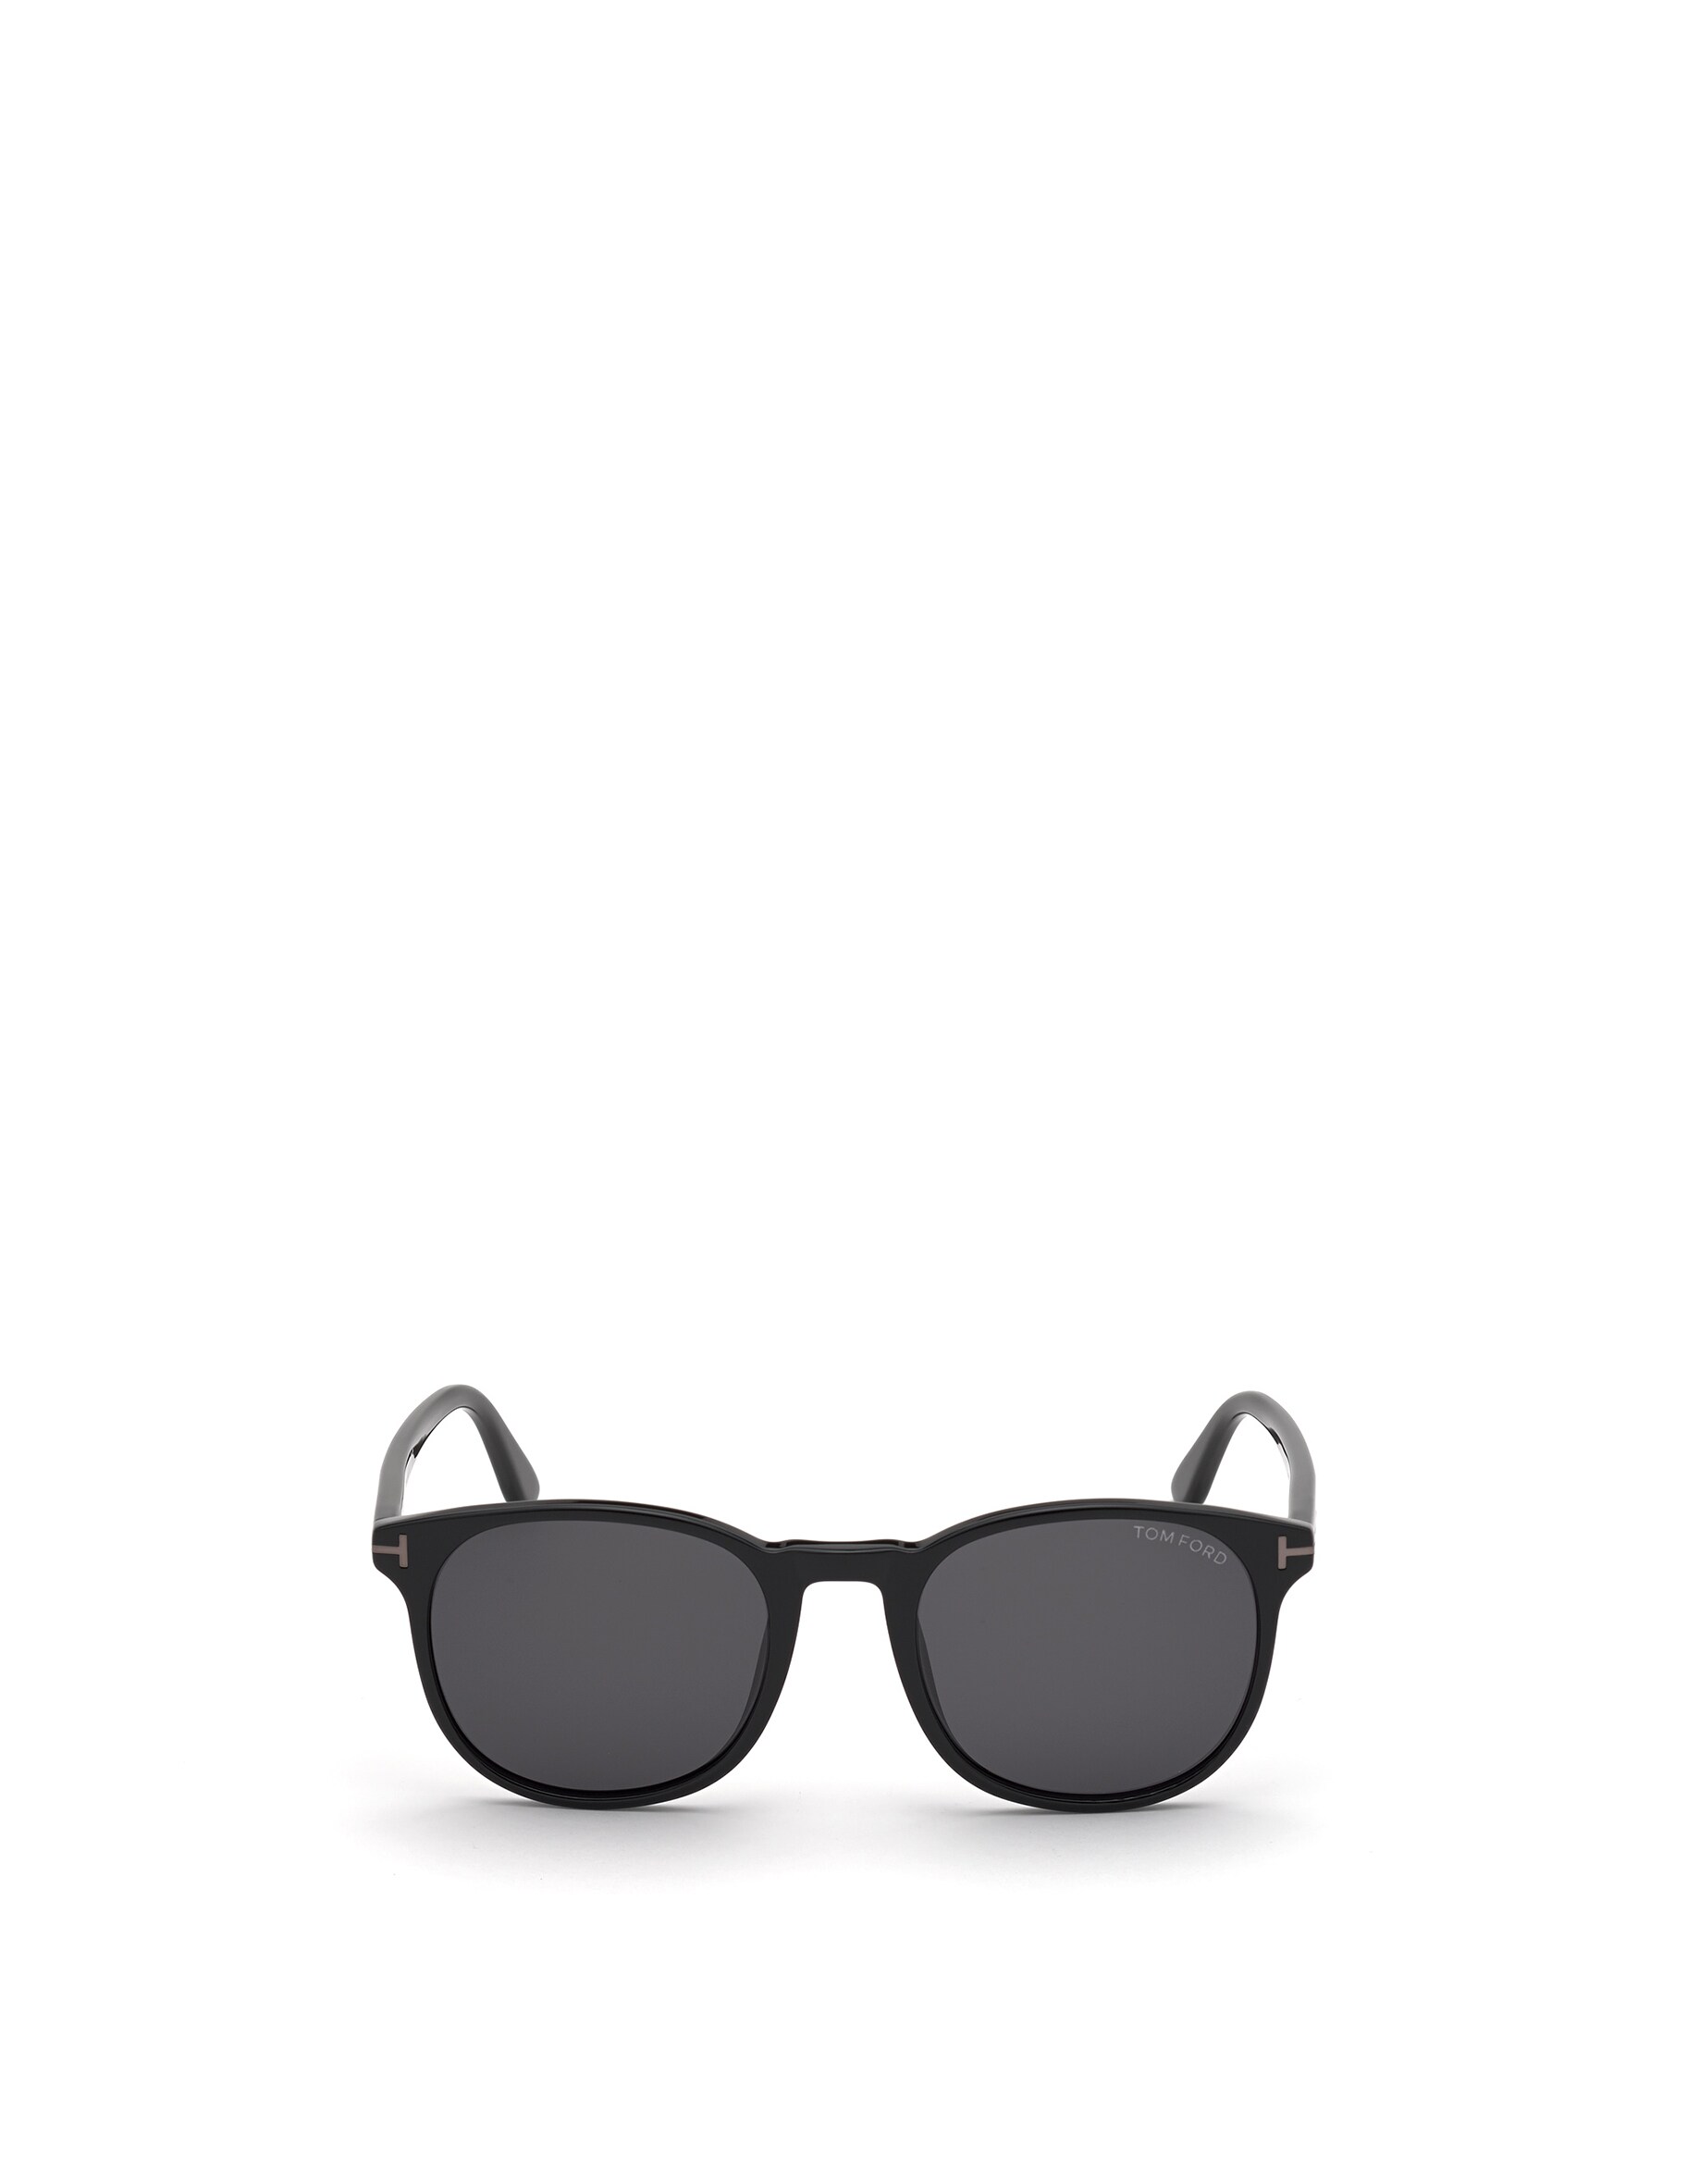 цена Круглые солнцезащитные очки Tom Ford, цвет Nero, Fumo